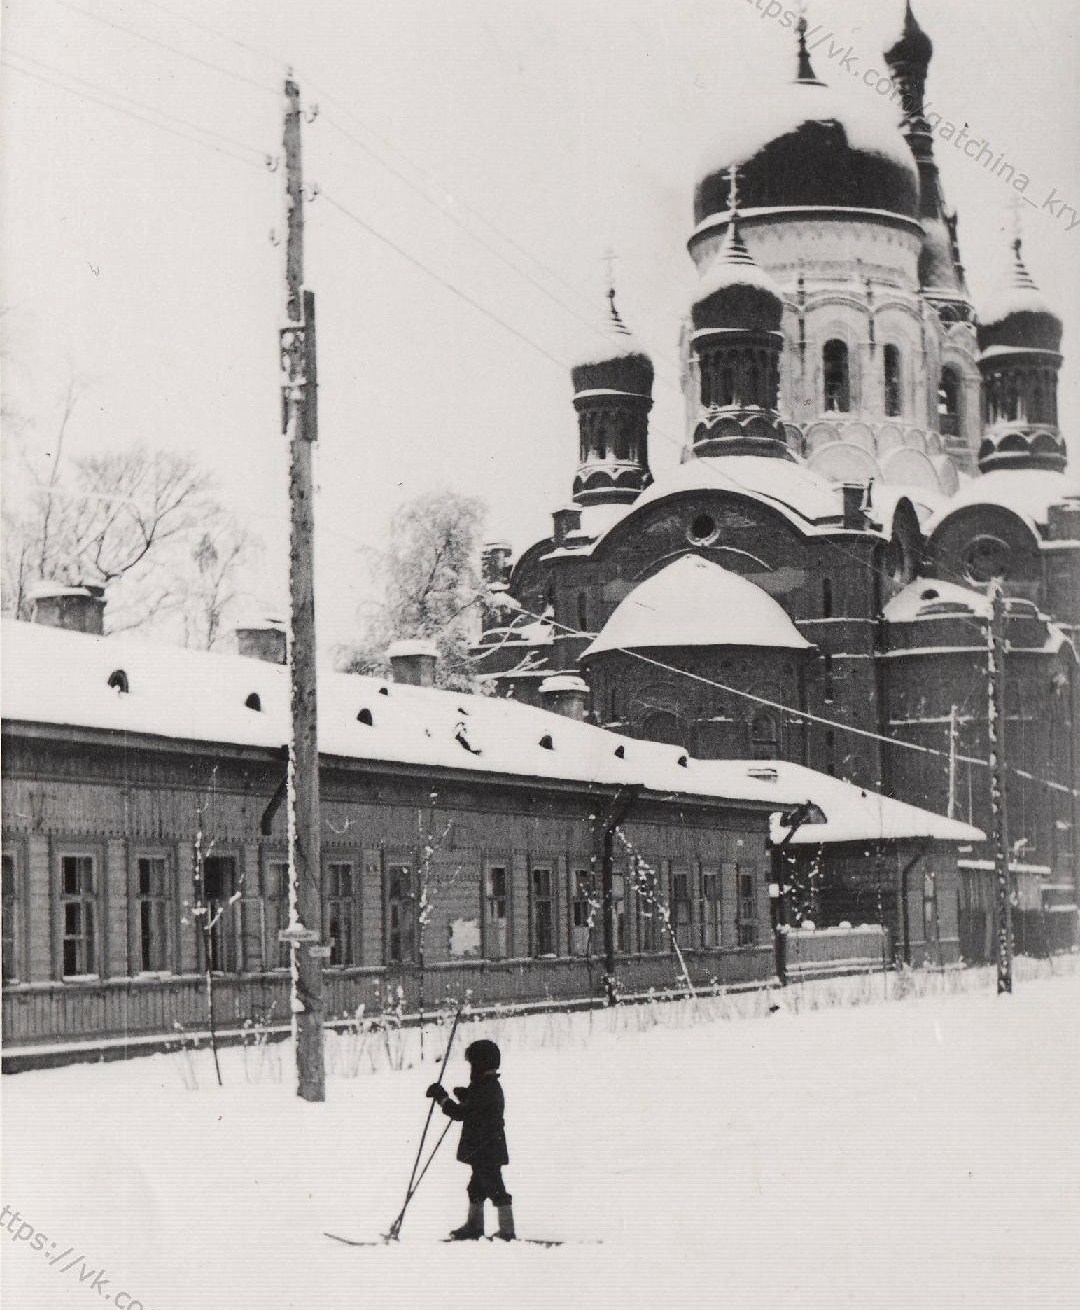 Дом № 3 на улице Достоевского. Бывший дом Дворцового ведомства.
Здесь когда-то имел казенную квартиру протоиерей Левитский.
Фото 9 ноября 1941 года.